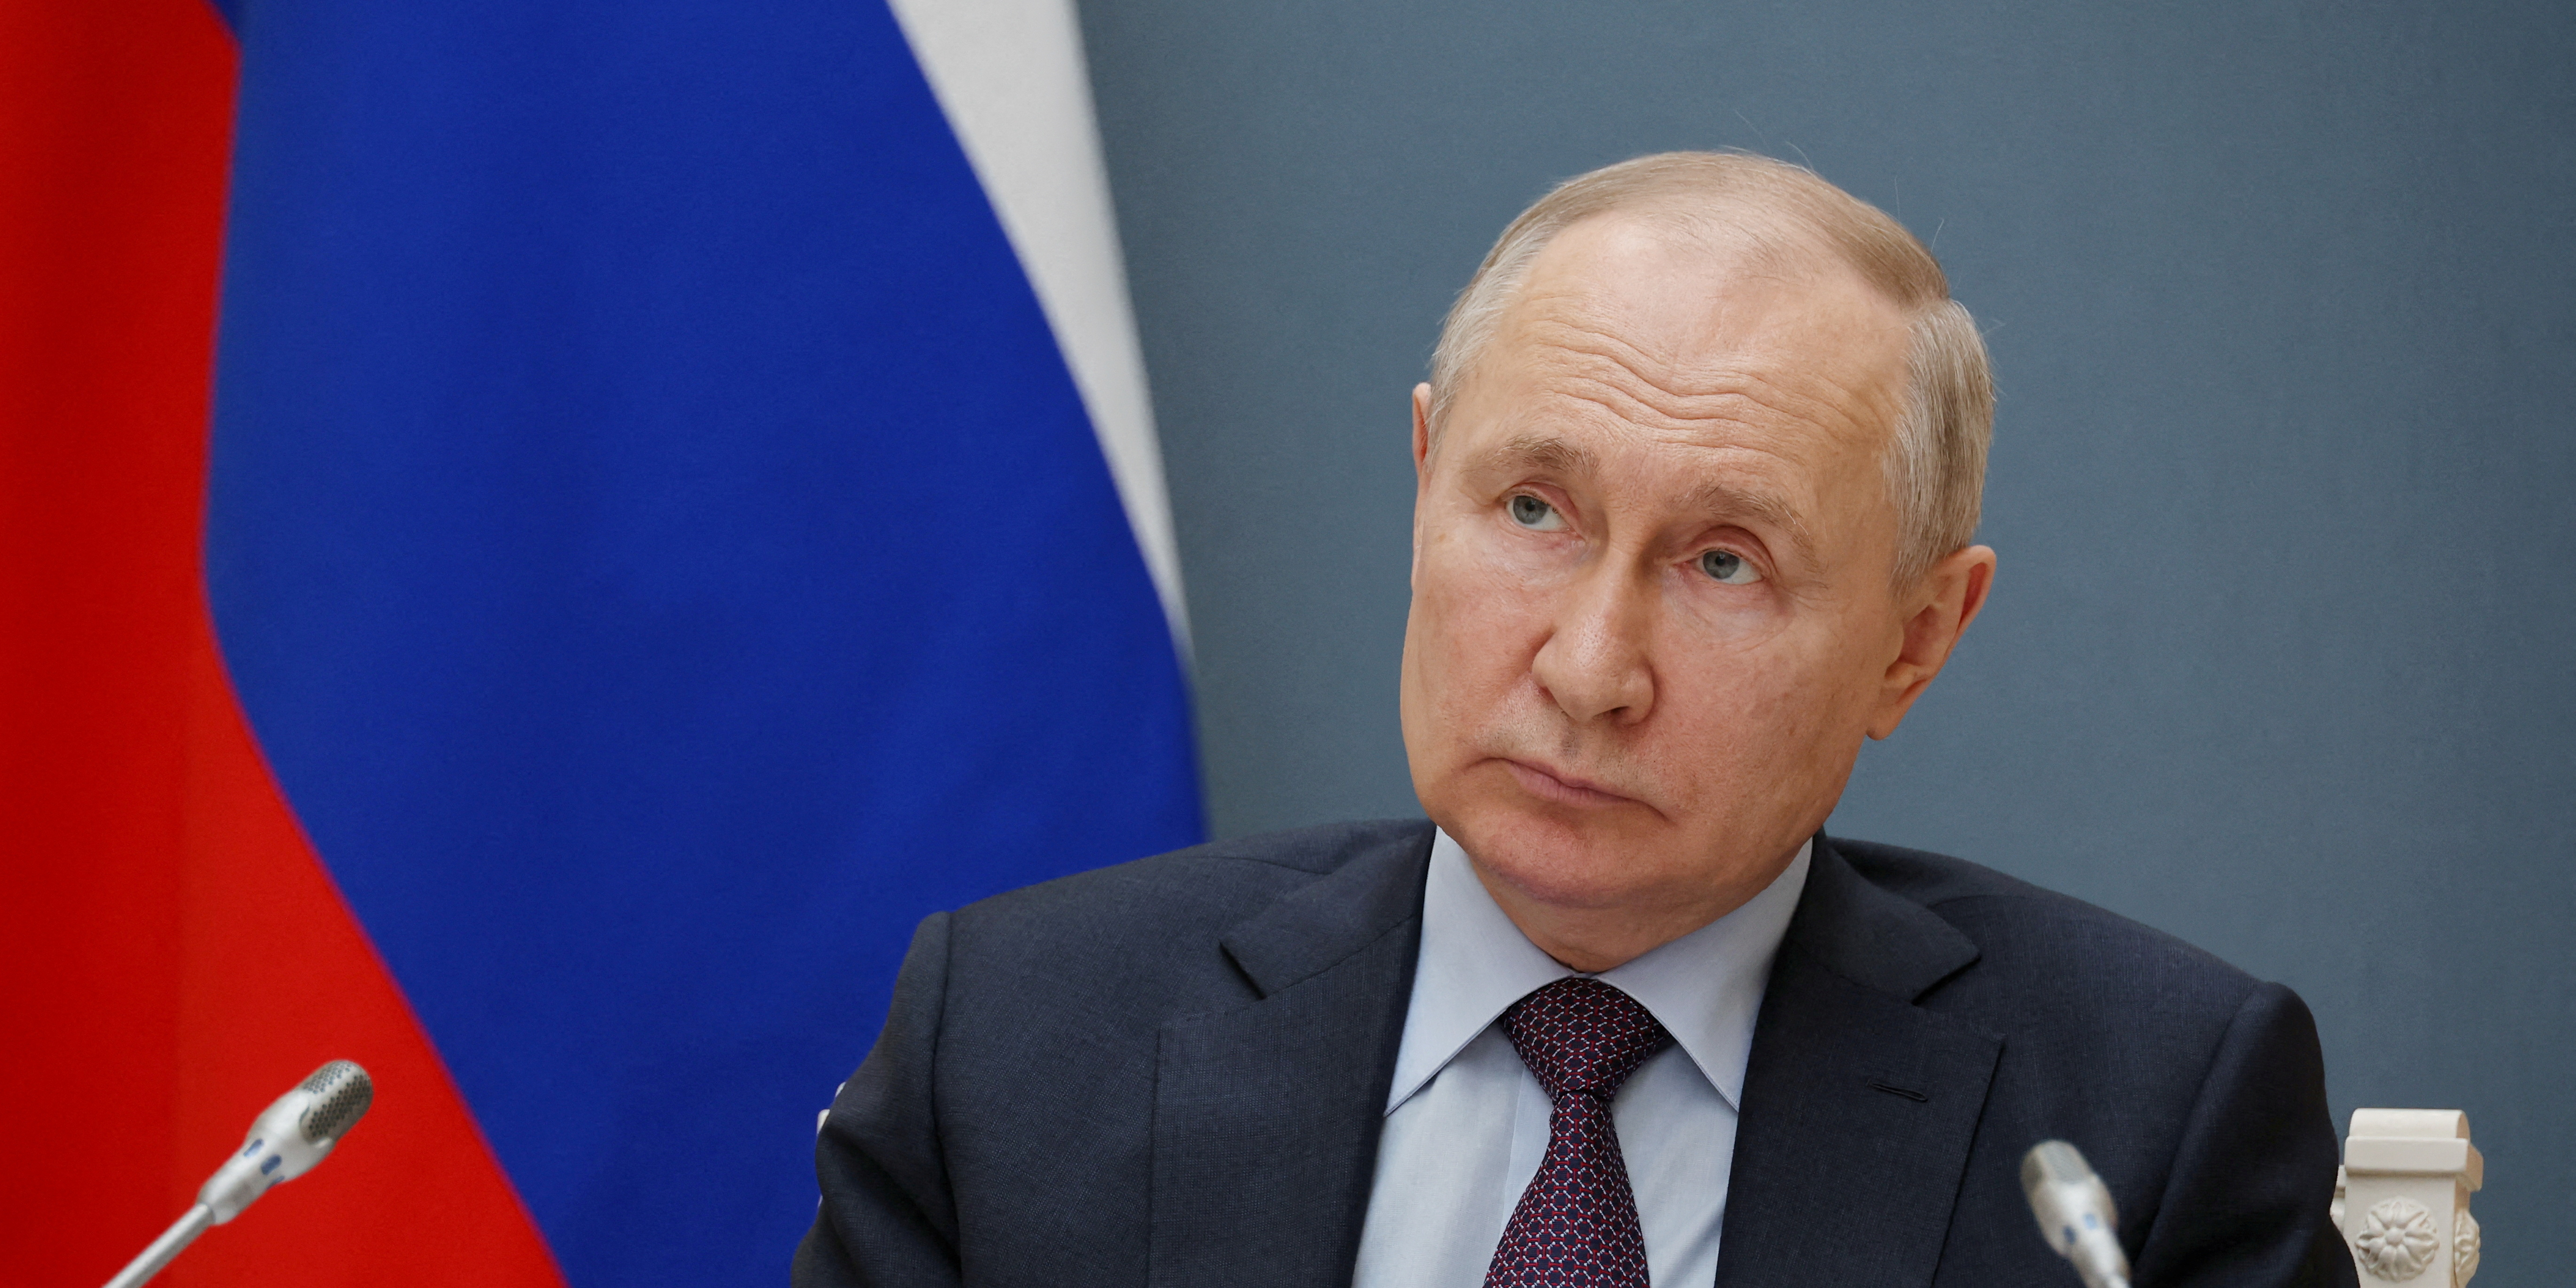 Vladimir Poutine menace (encore) de quitter l'accord sur l'exportation des céréales ukrainiennes